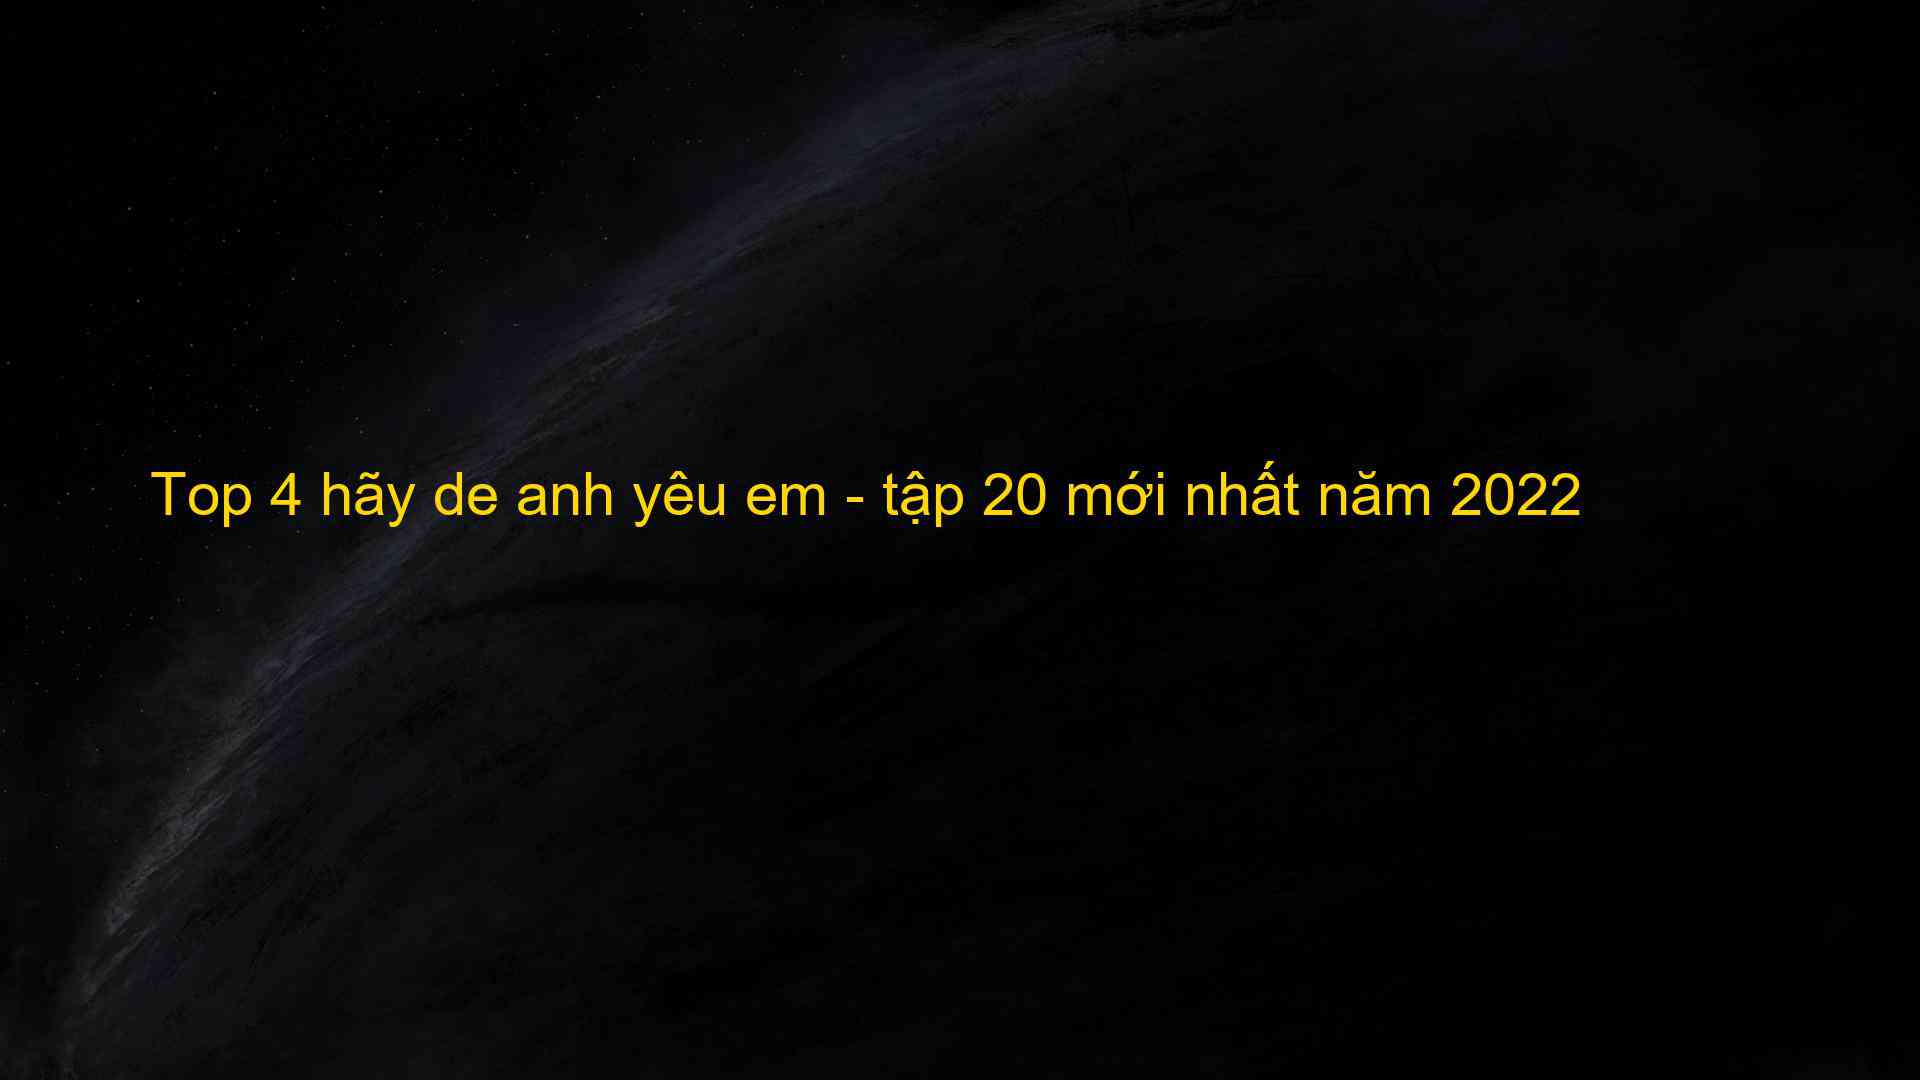 Top 4 hãy de anh yêu em - tập 20 mới nhất năm 2022 - Kiến Thức Cho Người lao Động Việt Nam